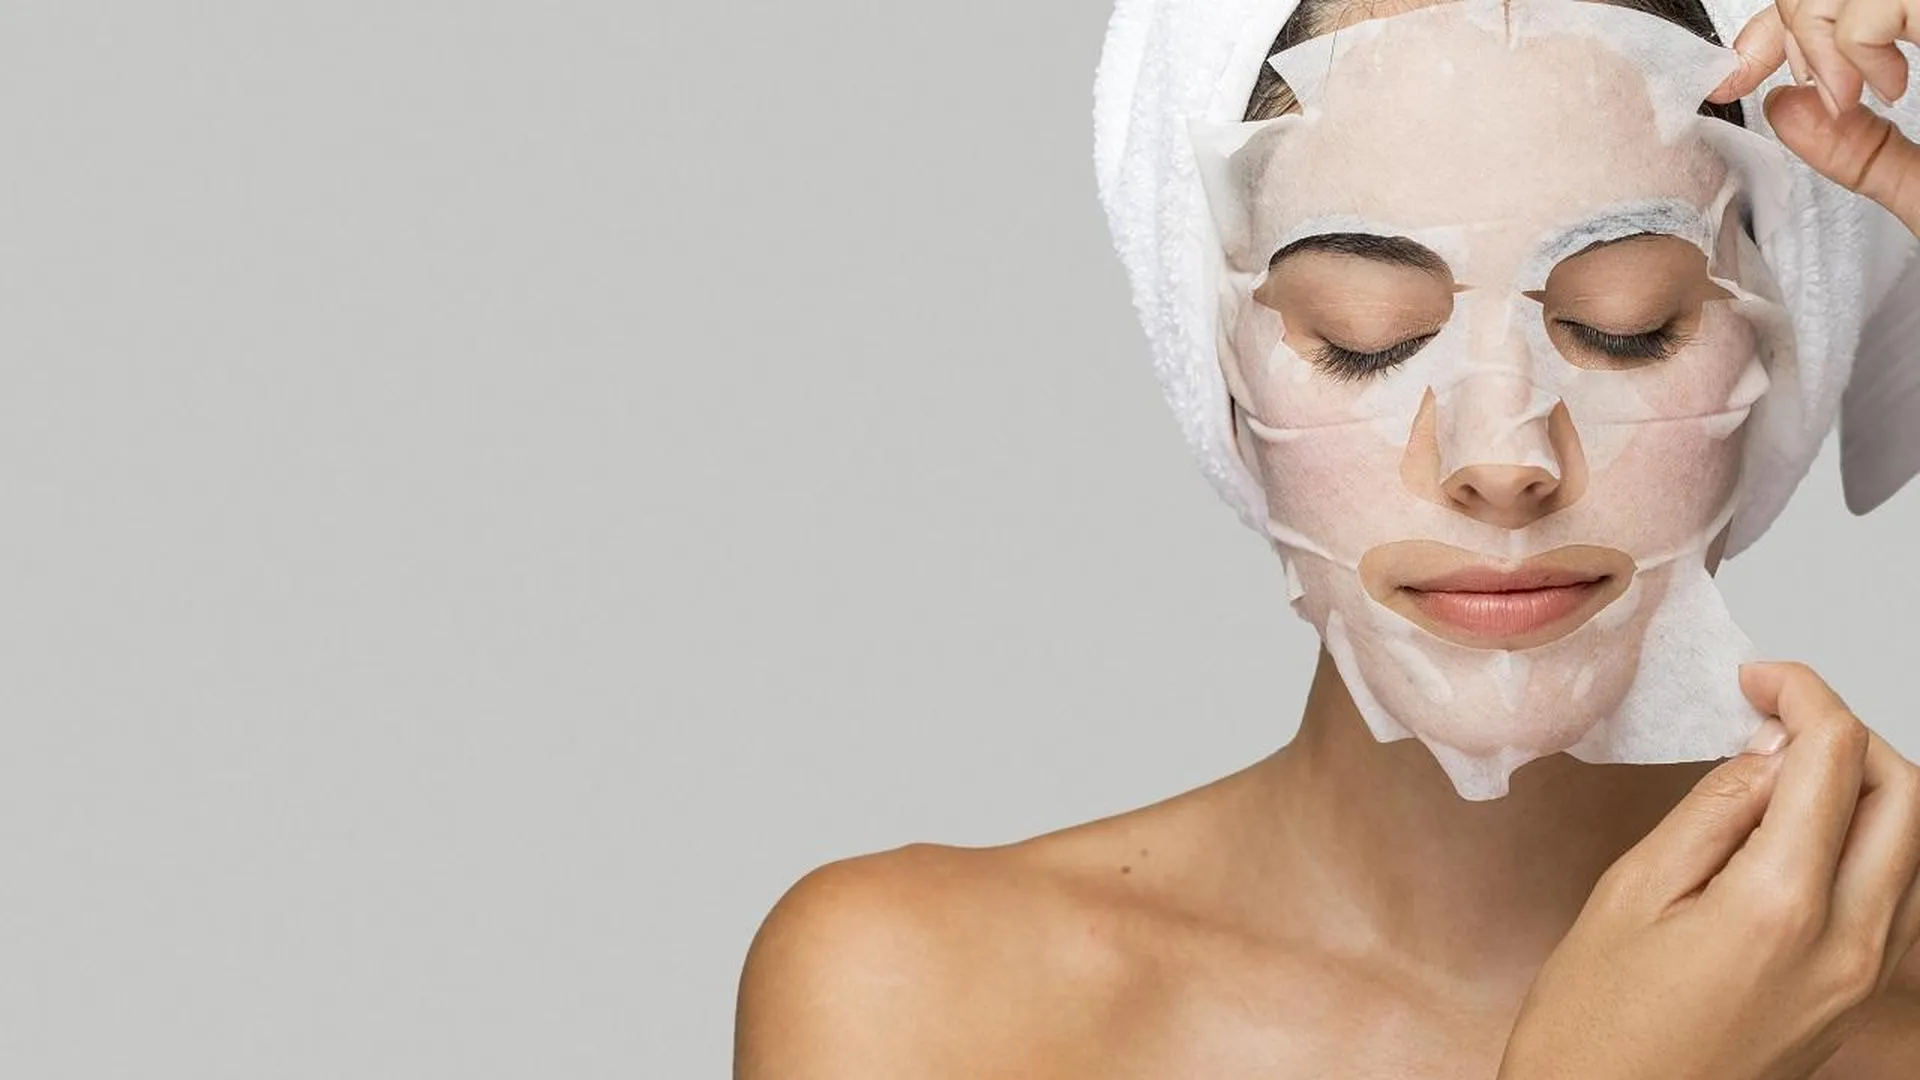 Лягте в ванну и сделайте массаж: как усилить эффект от использования тканевой маски